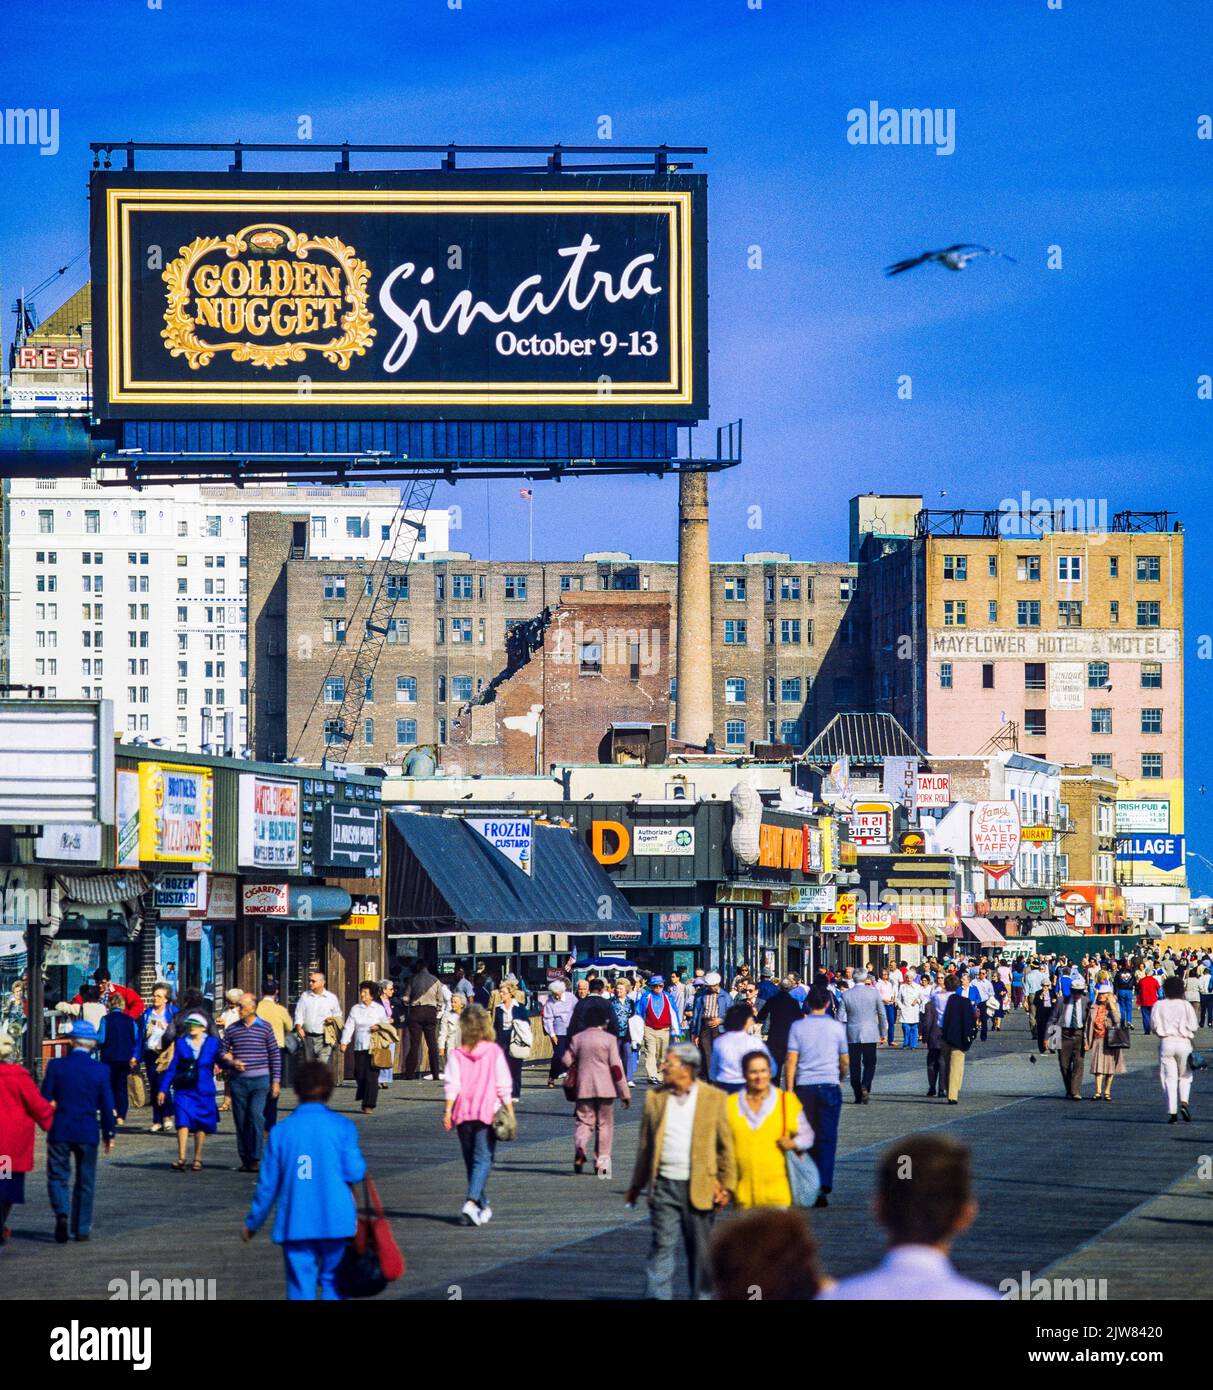 Atlantic City, 1980er, Touristen gehen auf der Promenade, Plakatwand verkündet Frank Sinatras Veranstaltungsort am 1985. Oktober im Golden Nugget Casino, New Jersey State, NJ, USA, Stockfoto